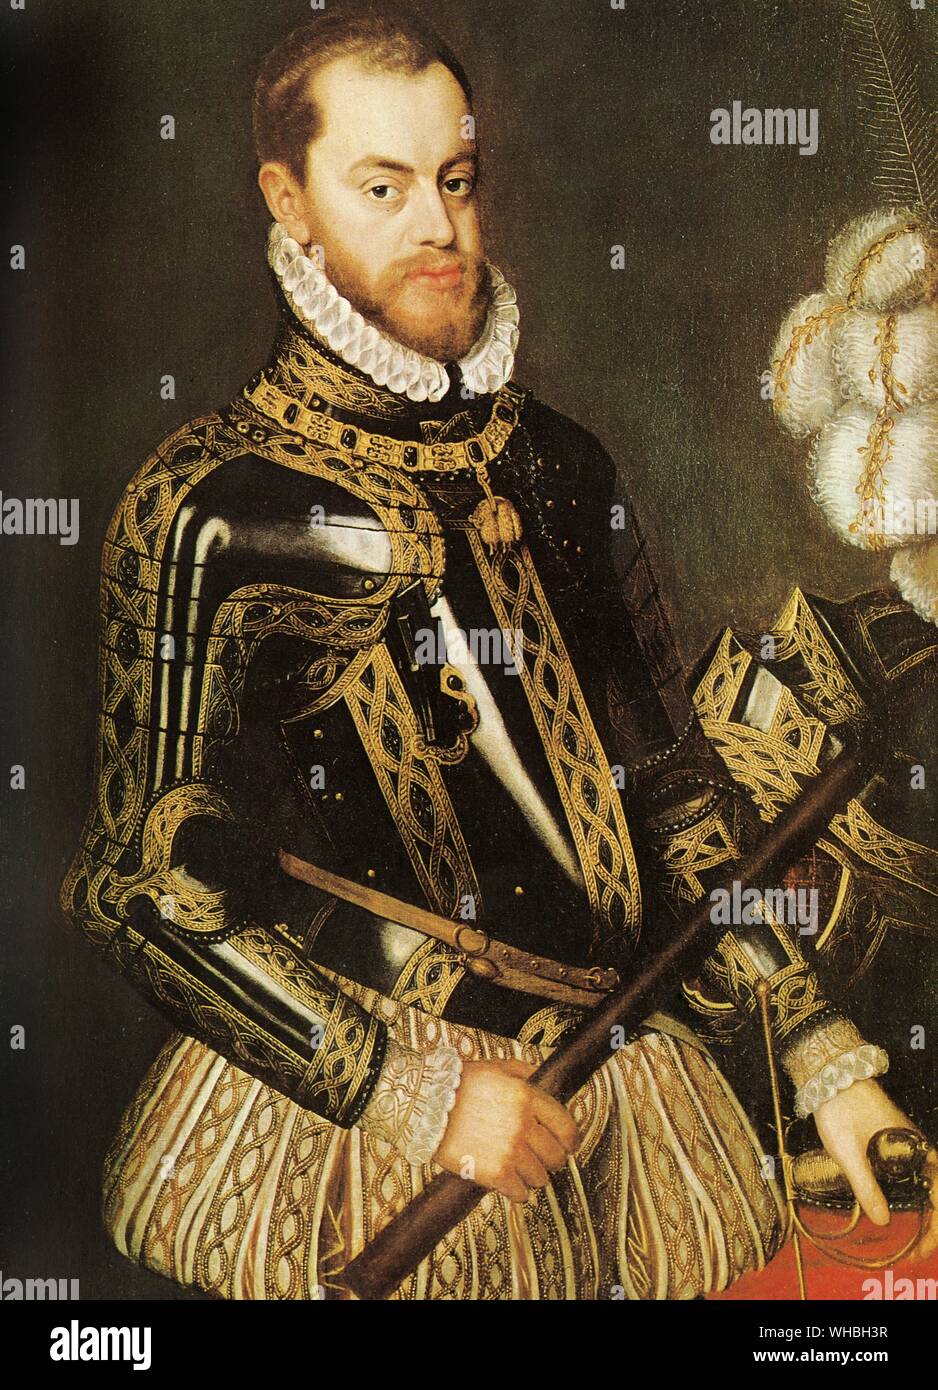 Le roi Philippe II, une règle inflexible, mais s'est efforcé de conquérir l'Angleterre pour l'Espagne.. Philippe II (21 mai 1527 - 13 septembre 1598) fut roi de France de 1556 jusqu'à 1598, Roi de Naples à partir de 1554 jusqu'en 1598, le roi consort d'Angleterre (comme époux de Marie I) de 1554 à 1558, seigneur des dix-sept provinces (la tenue de différents titres pour les territoires individuels, telles que le duc ou Comte) de 1556 jusqu'en 1581, le roi du Portugal et l'Algarves (comme Philippe I) à partir de 1580 jusqu'en 1598 et Roi du Chili à partir de 1554 jusqu'à 1556. Philippe II est considéré comme l'un des plus grands souverains de l'histoire de Banque D'Images